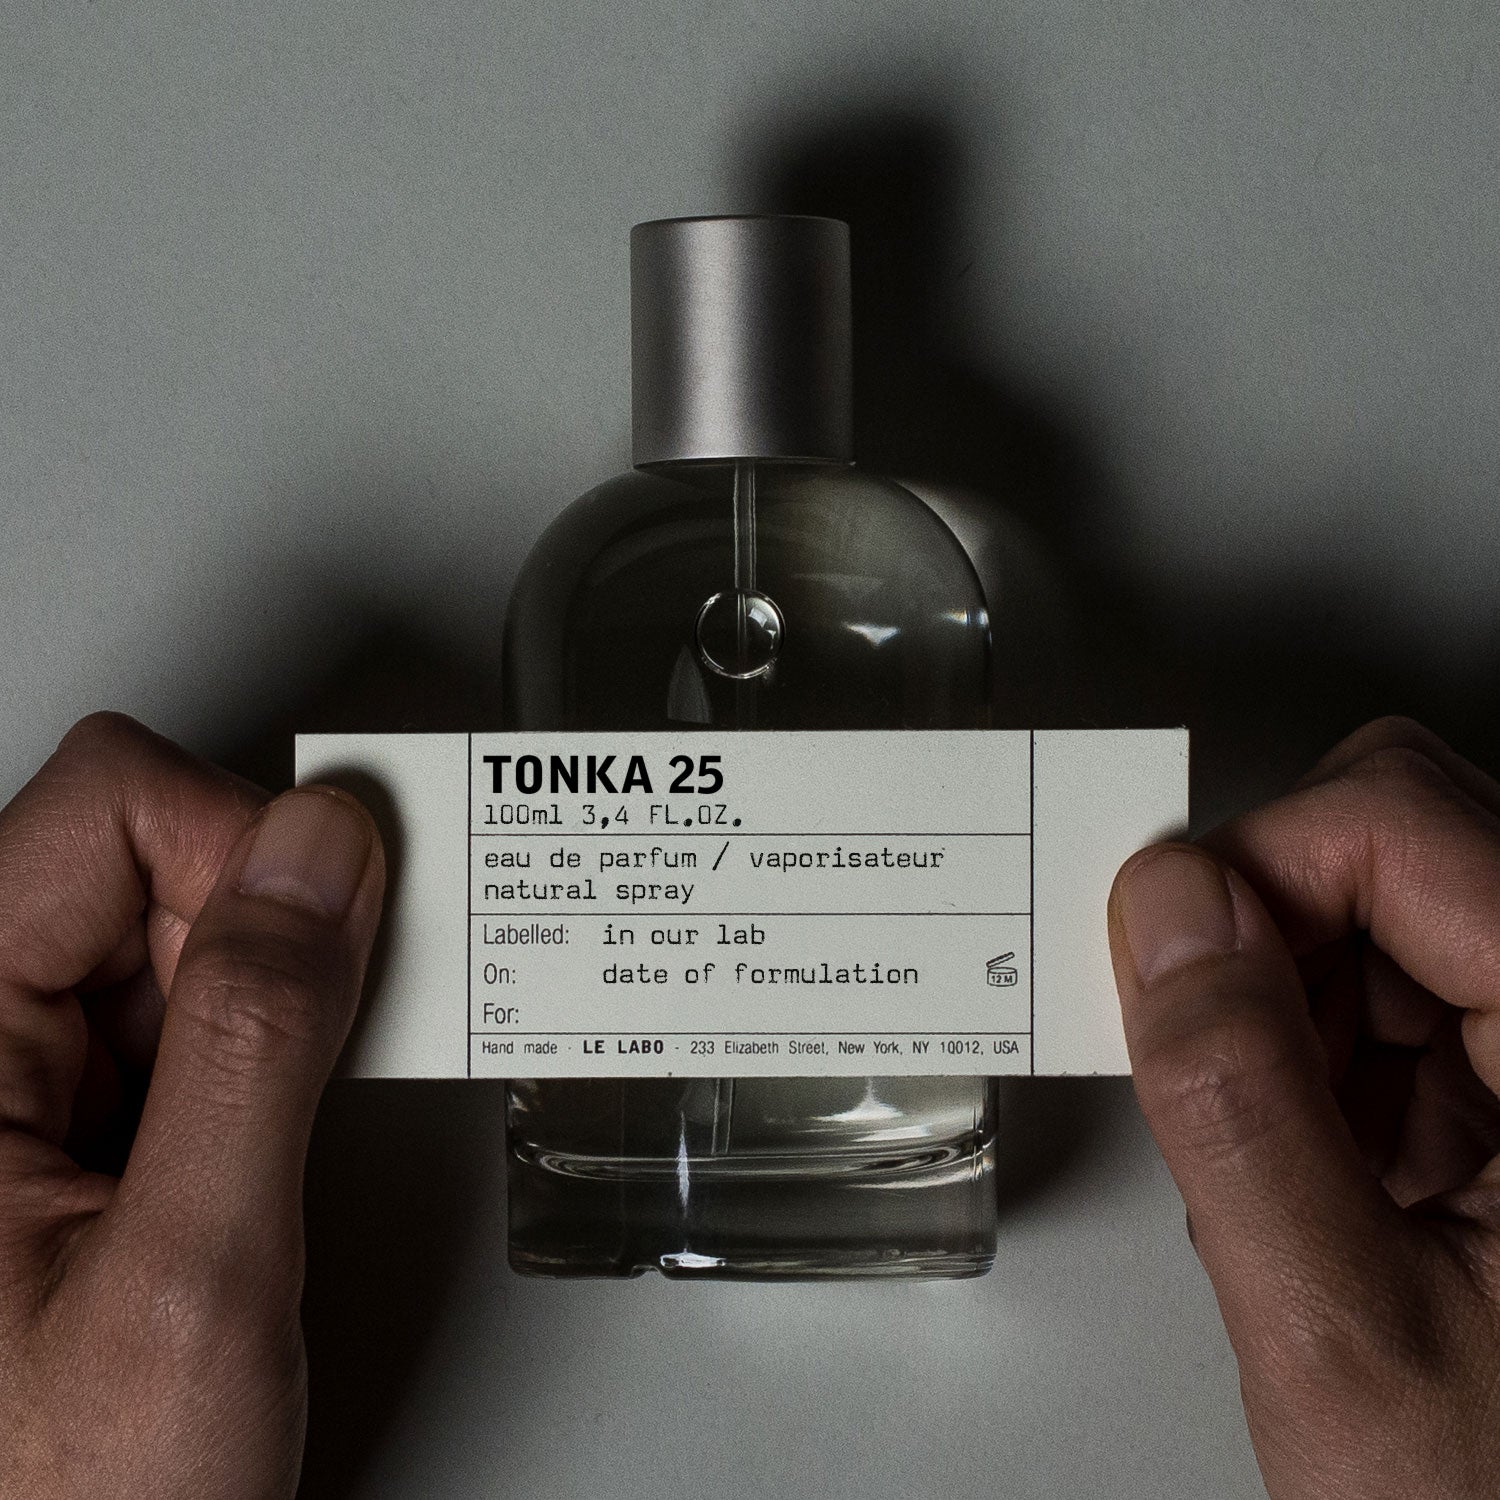 TONKA 25